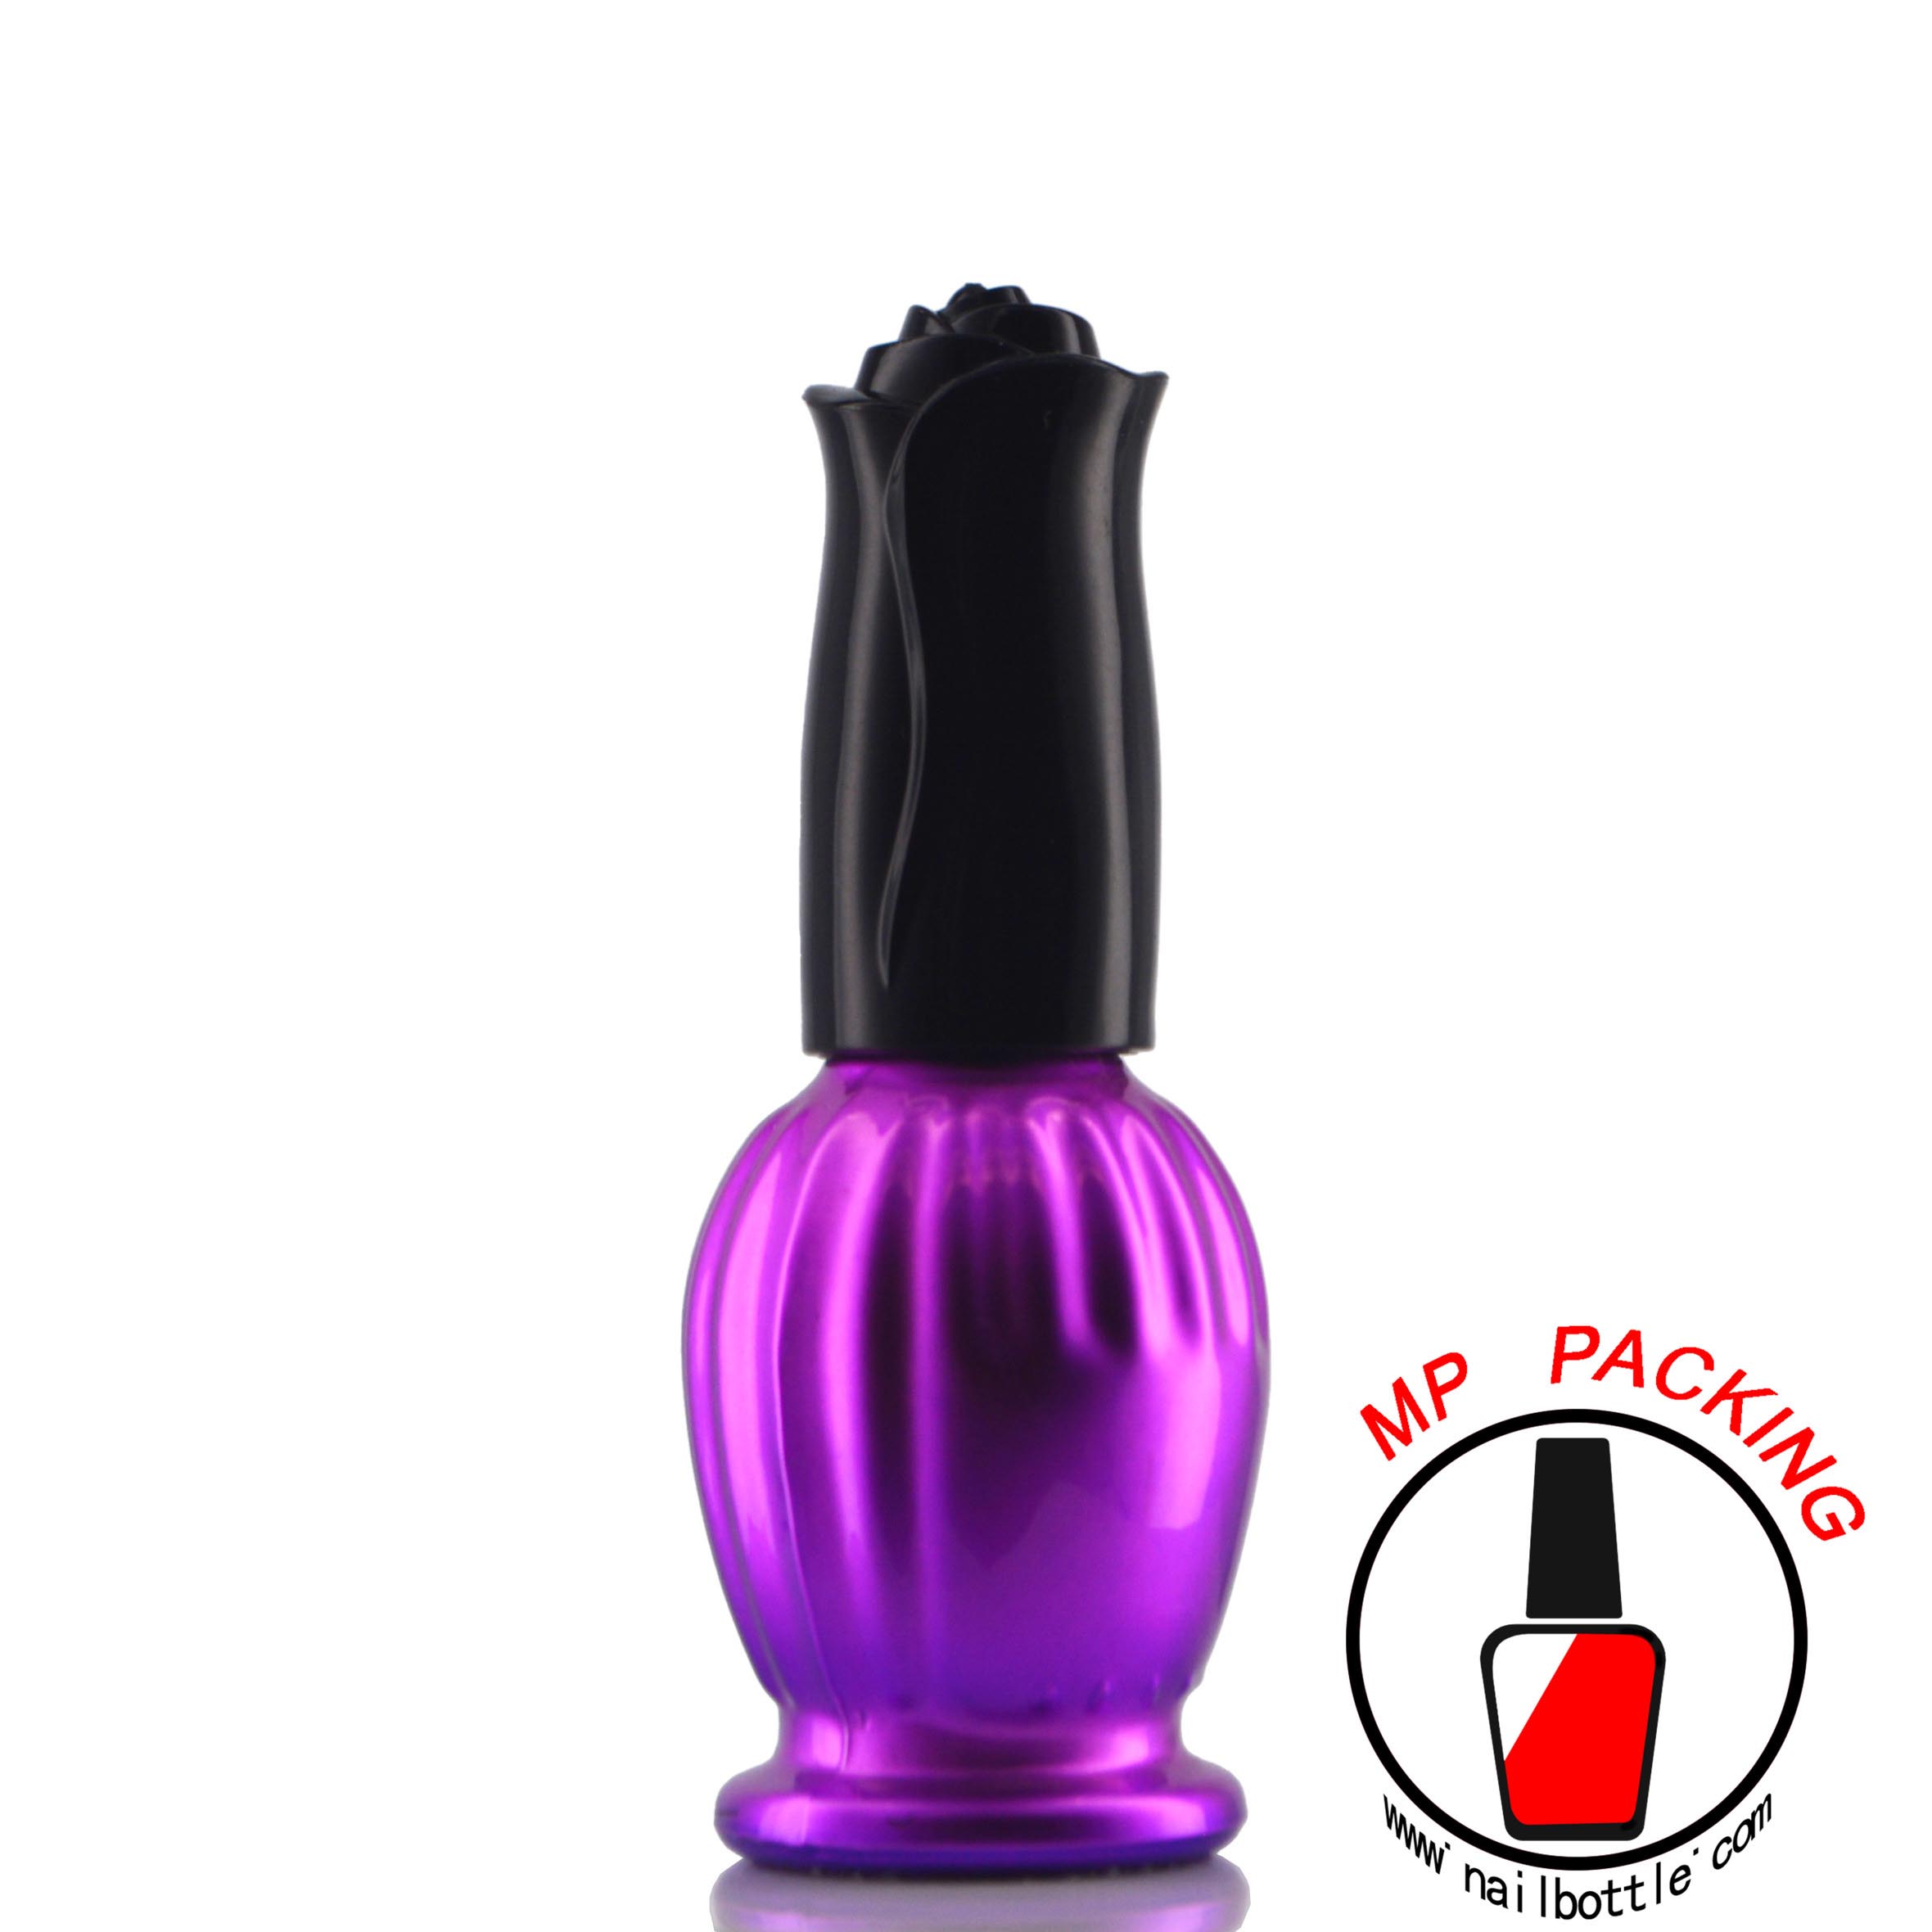  nail polish colors bottle